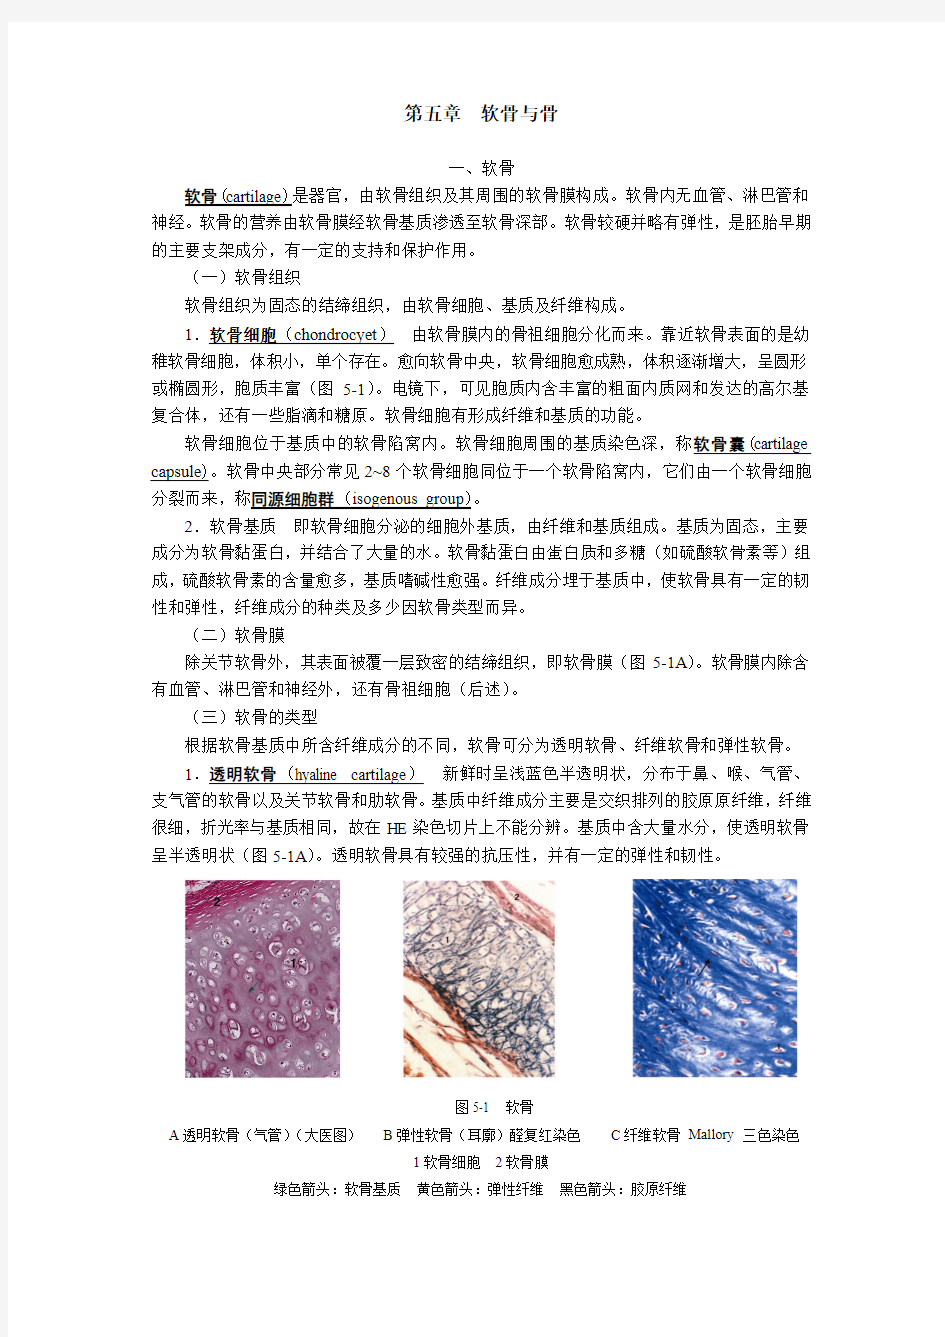 组织胚胎学 第五章 软骨与骨